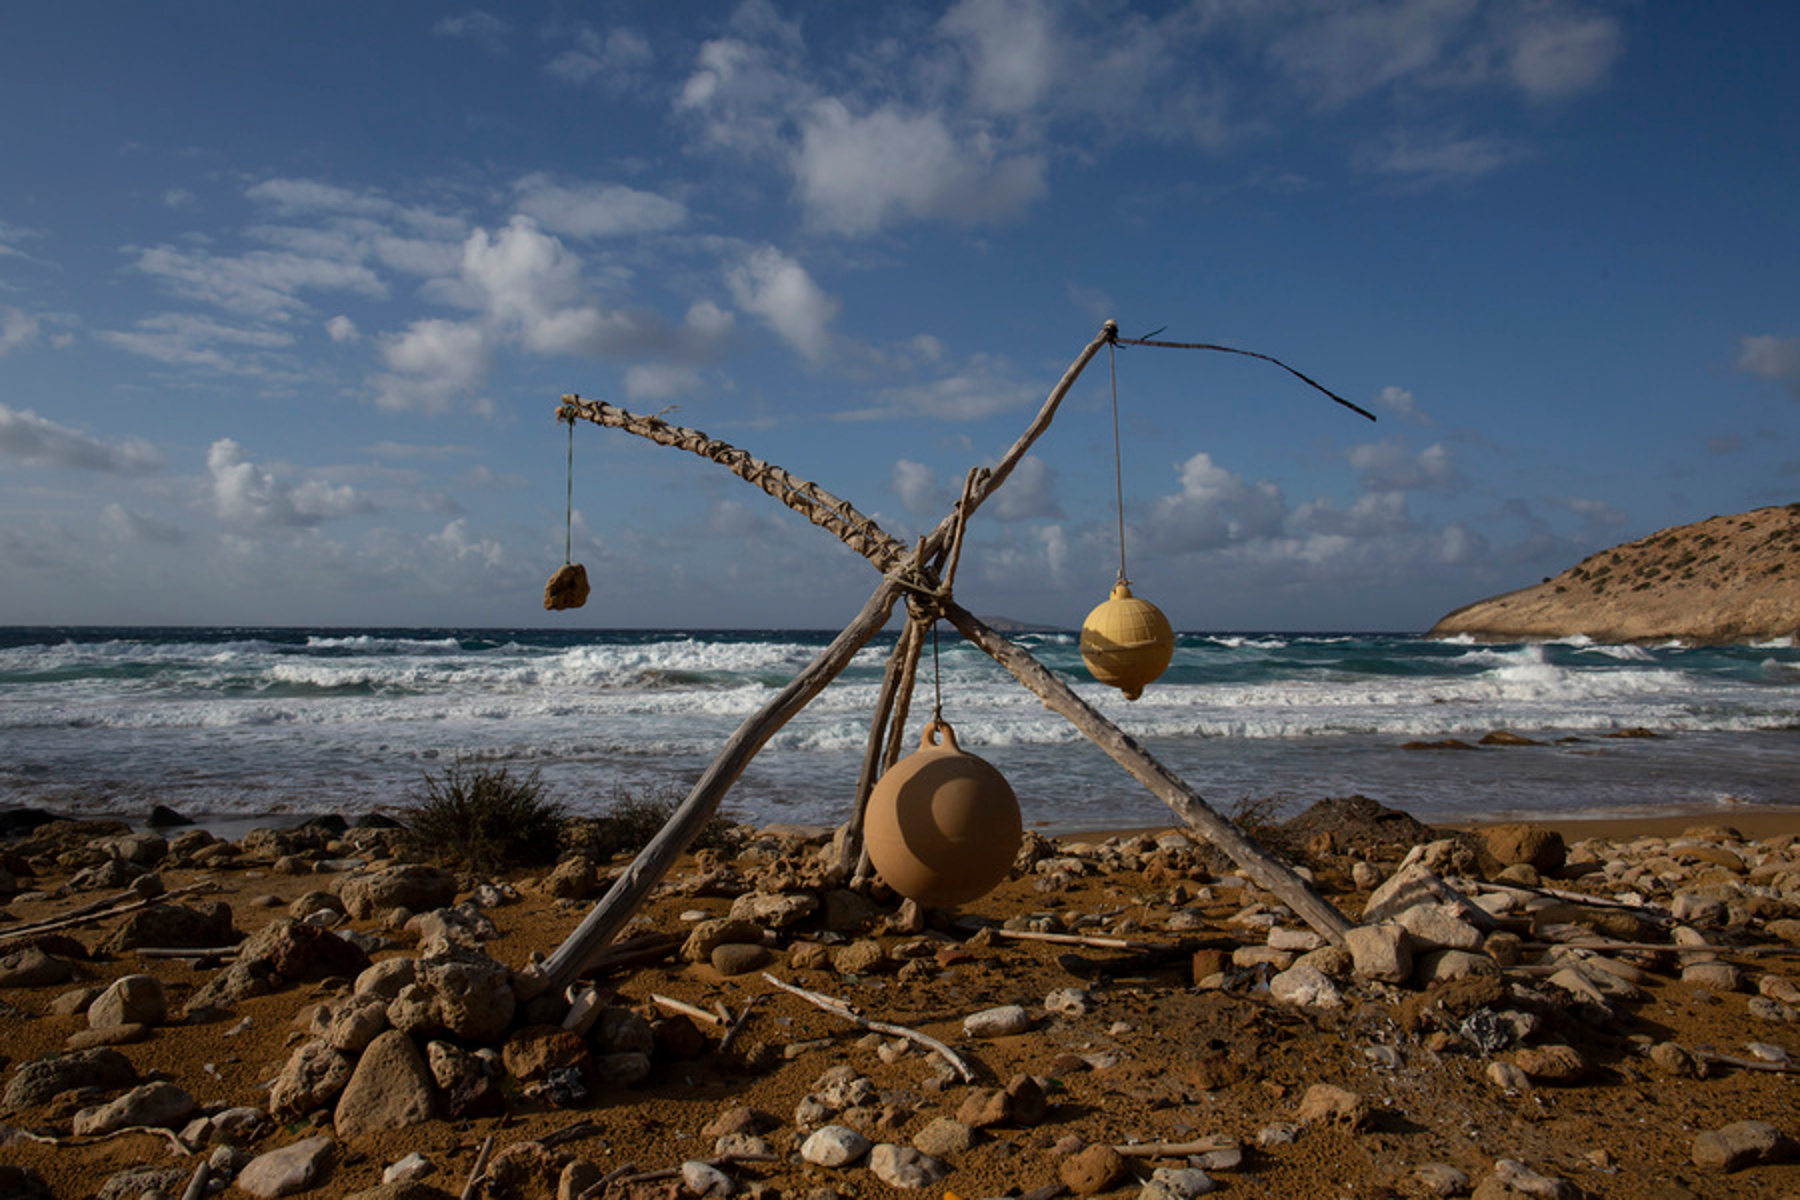 Φωτογραφία που δόθηκε στη δημοσιότητα την Κυριακή 22 Νοεμβρίου 2020, απεικονίζει μία κατασκευή με κρεμασμένες πέτρες και μικρές σημαδούρες πάνω σε ξύλα, φτιαγμένη από κατασκηνωτές, σε παραλία στο νησί της Γαύδου, Τετάρτη 29 Ιανουαρίου 2020. Εκτός από τους ντόπιους, ο αριθμός των μόνιμων κατοίκων της Γαύδου κατά τη διάρκεια του χειμώνα, εξαρτάται από τον αριθμό των κατασκηνωτών. Καθώς το νησί, αποτελεί διάσημο καλοκαιρινό προορισμό για τους ελεύθερους κατασκηνωτές, πολλοί εξ αυτών συνεχίζουν να διαμένουν σε παραλίες όλο τον υπόλοιπο χρόνο. ΑΠΕ-ΜΠΕ/ΑΠΕ-ΜΠΕ/ΓΙΑΝΝΗΣ ΚΟΛΕΣΙΔΗΣ